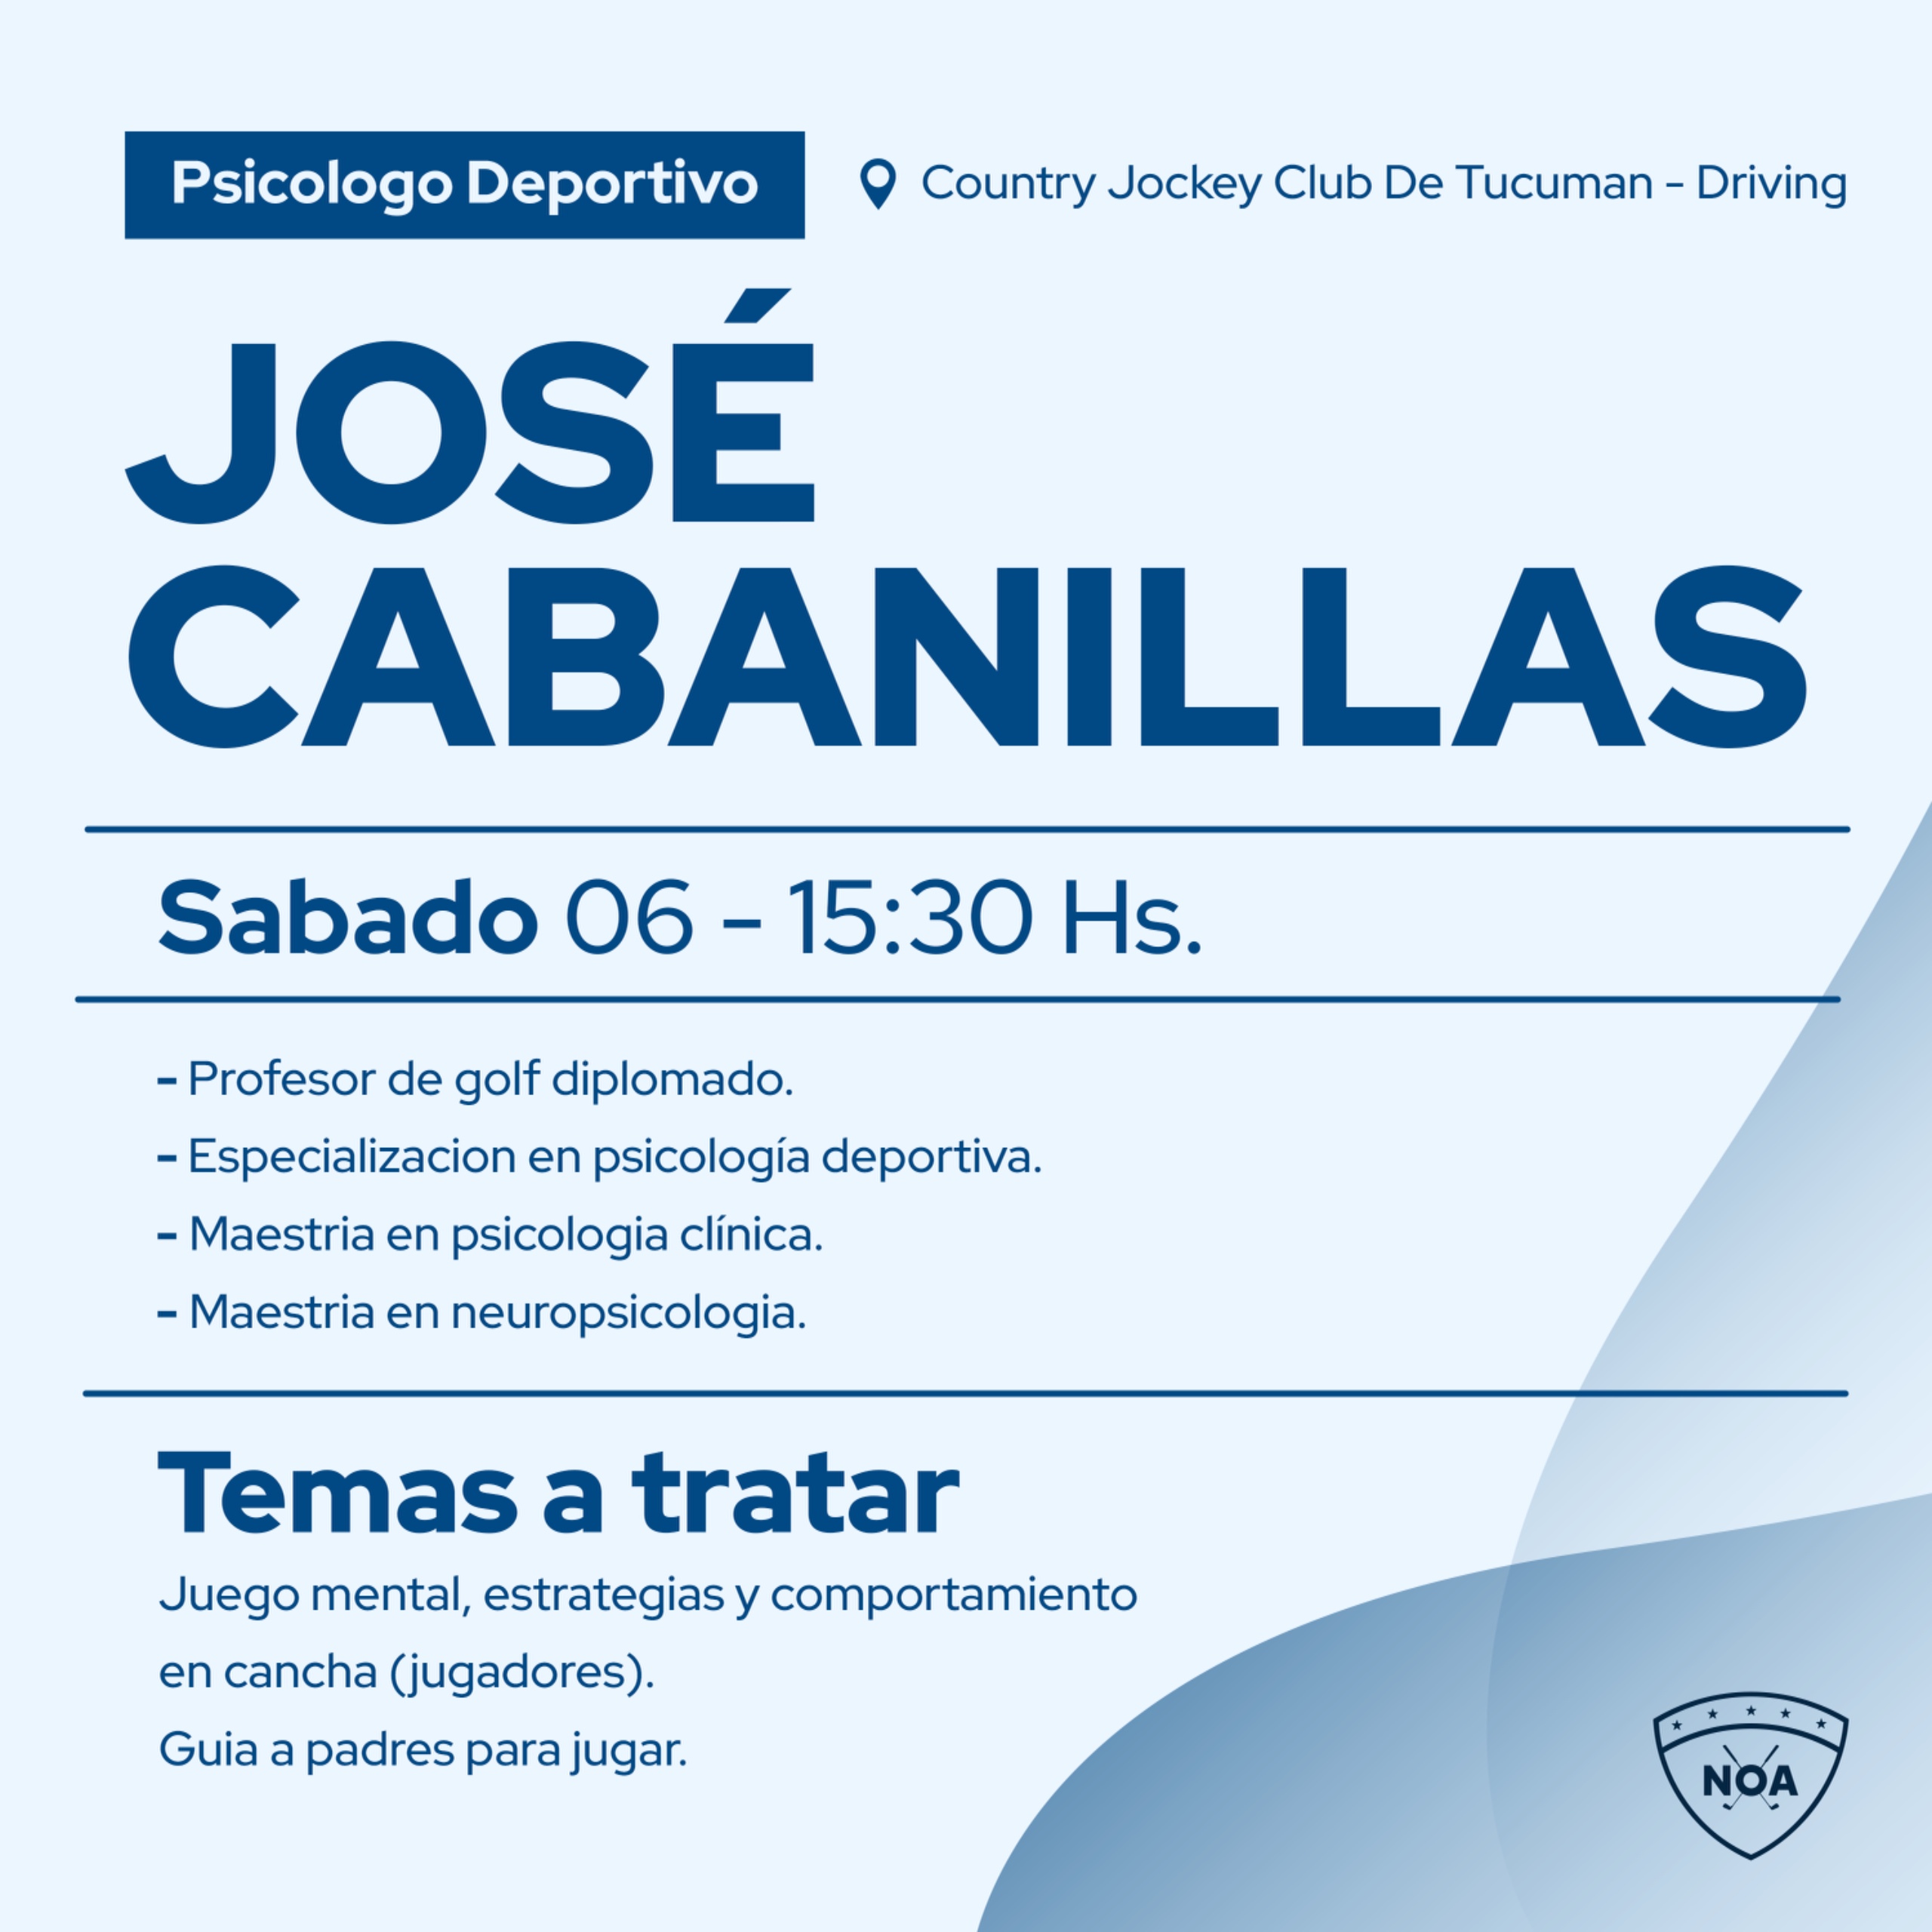 Cllinica de Jose Cabanillas - Juego Mental, estrategias y comportamiento en cancha 